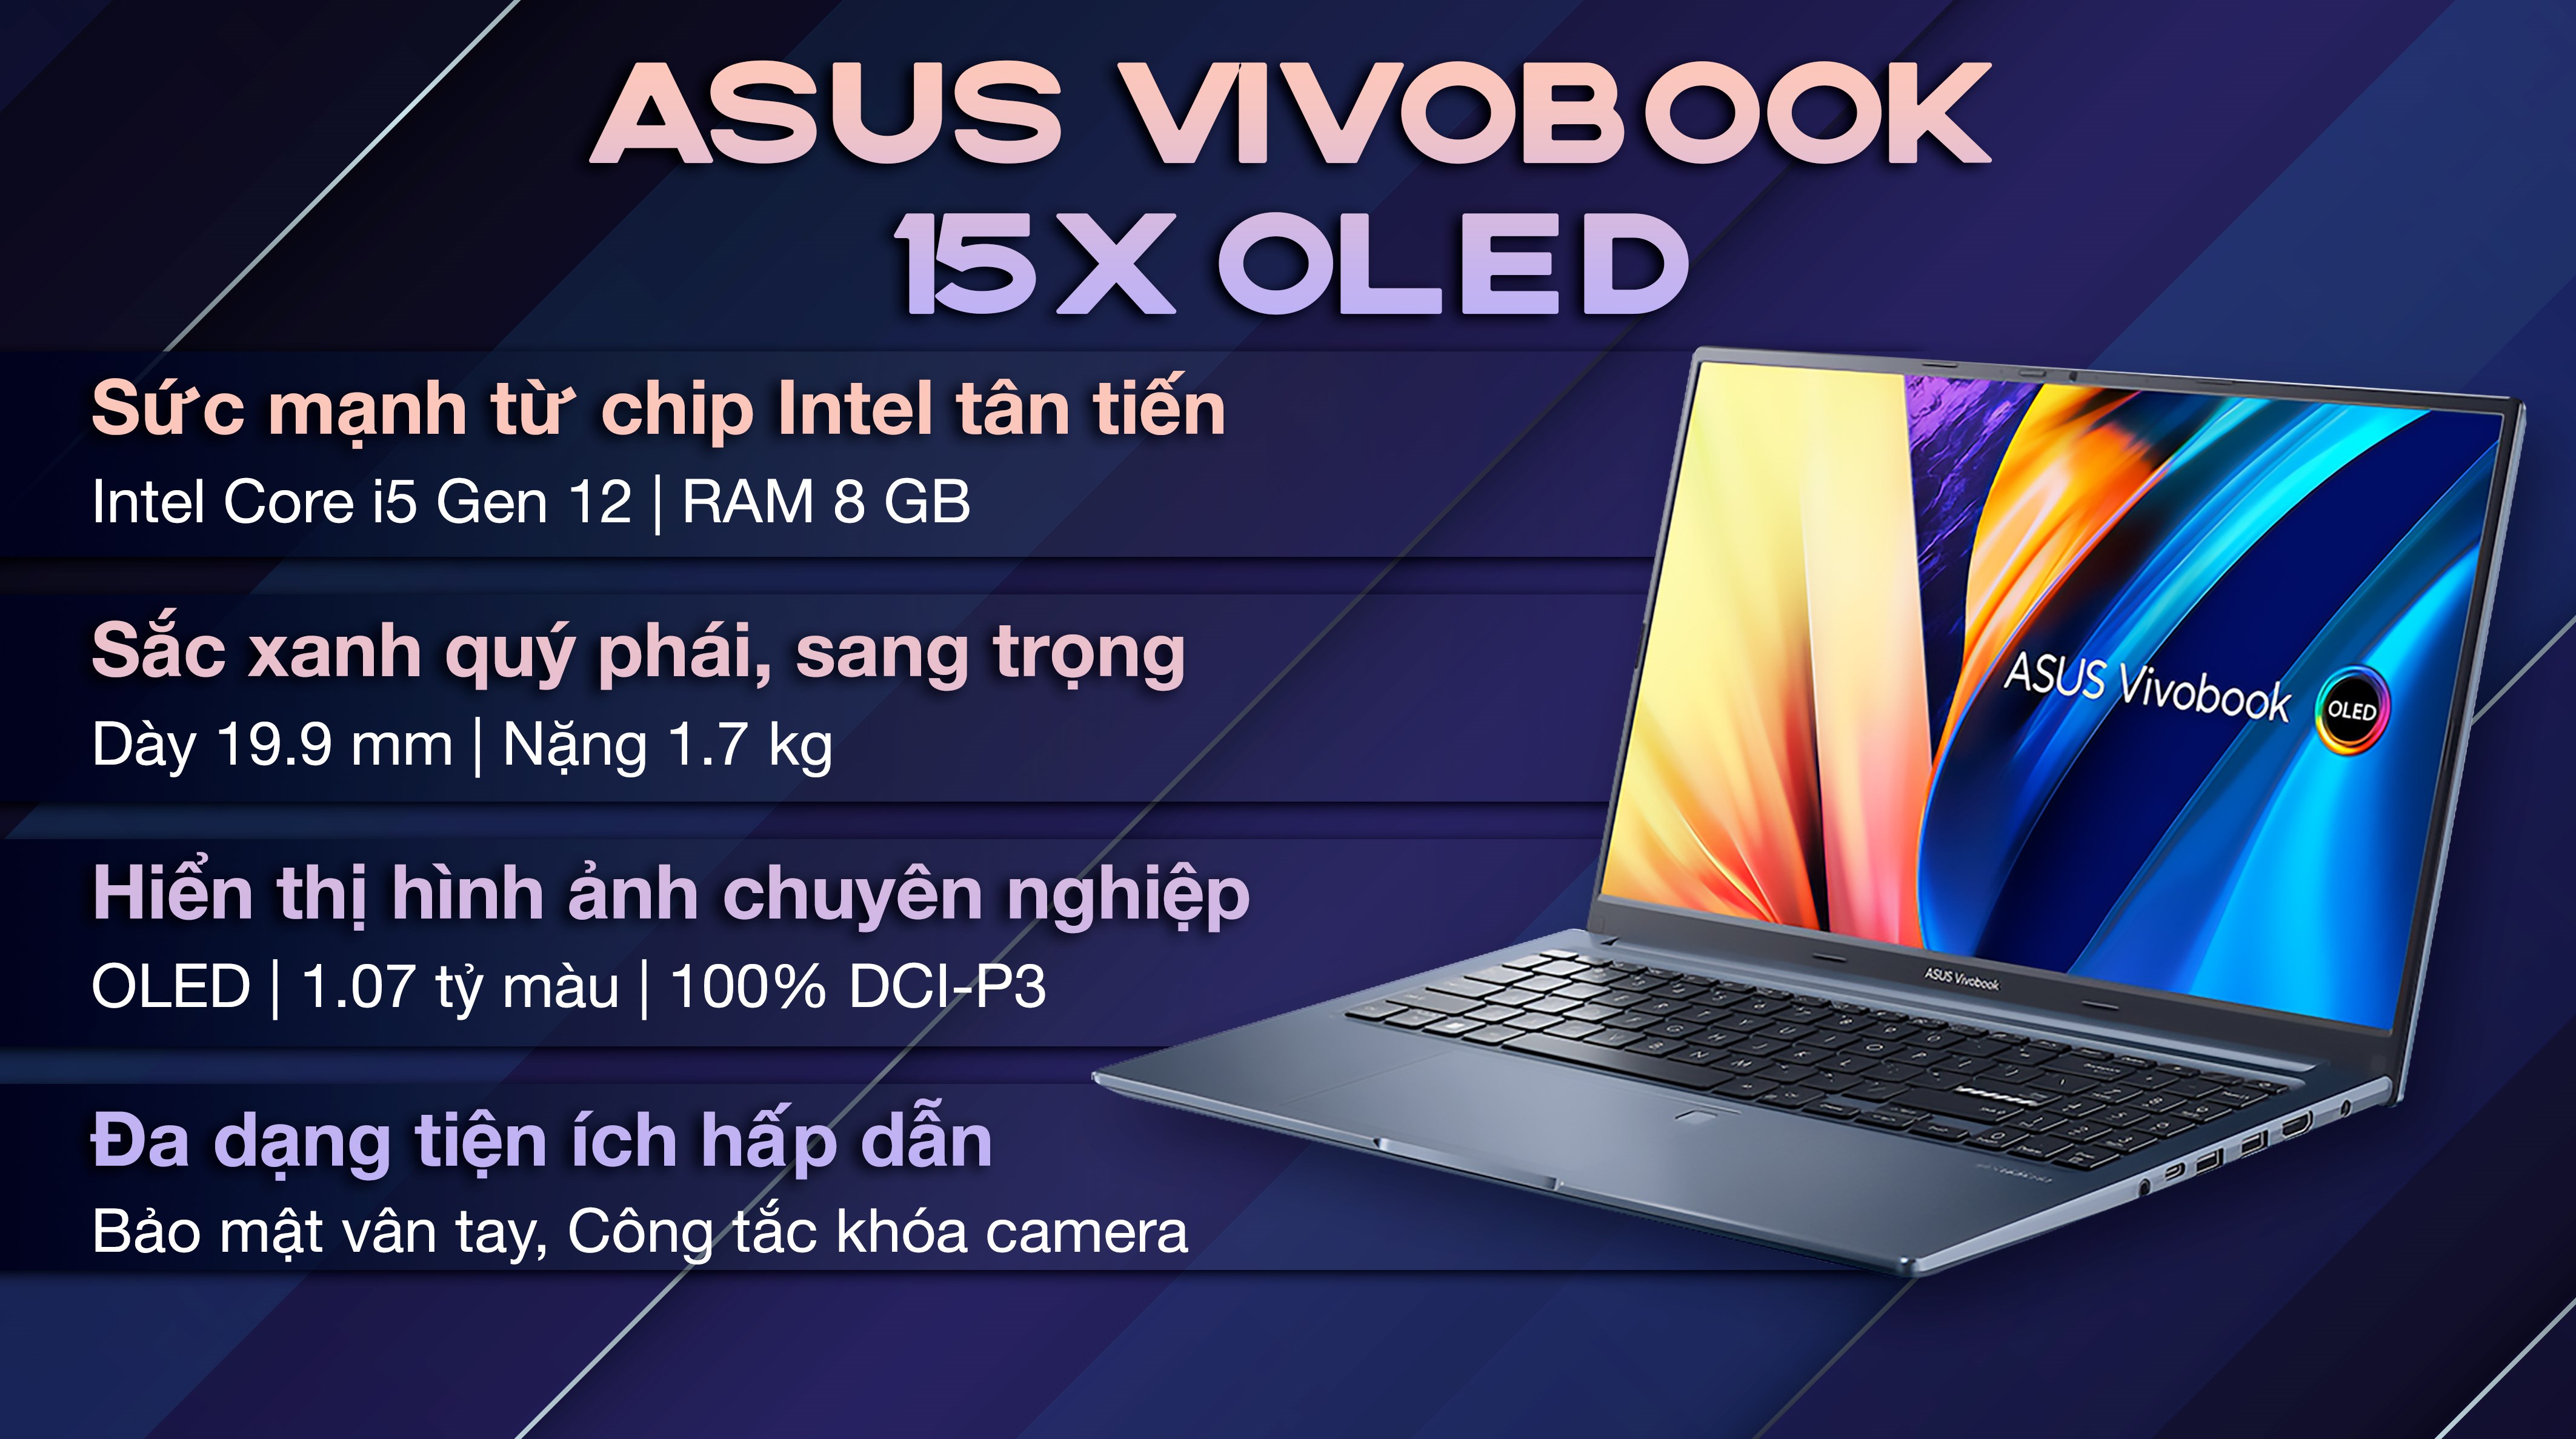 Asus VivoBook là một chiếc laptop đáng mua, với thiết kế mỏng nhẹ và hiệu suất tuyệt vời. Các màu sắc trẻ trung và thời trang sẽ làm cho bạn trông phong cách và tự tin. Hãy xem hình ảnh để tìm hiểu thêm về Asus VivoBook và những tính năng nổi bật của nó.